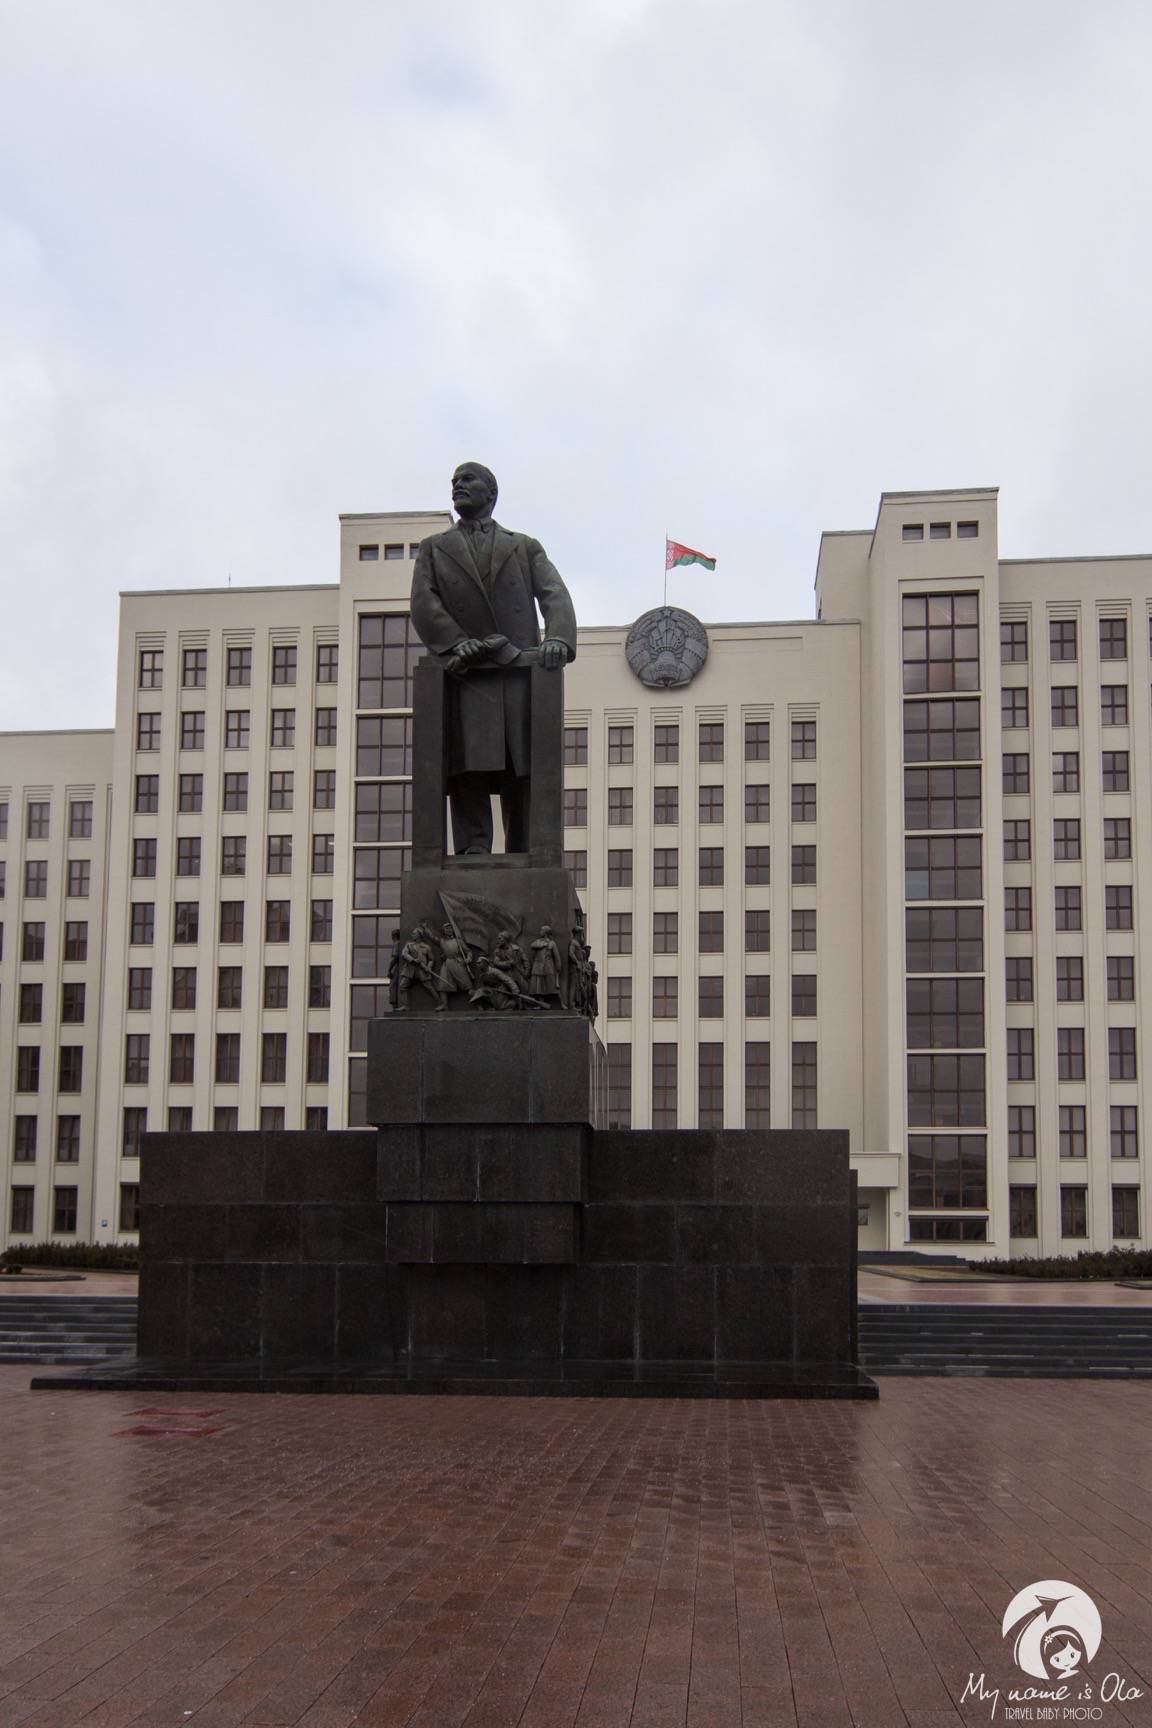 Statue of Lenin, Minsk, Belarus